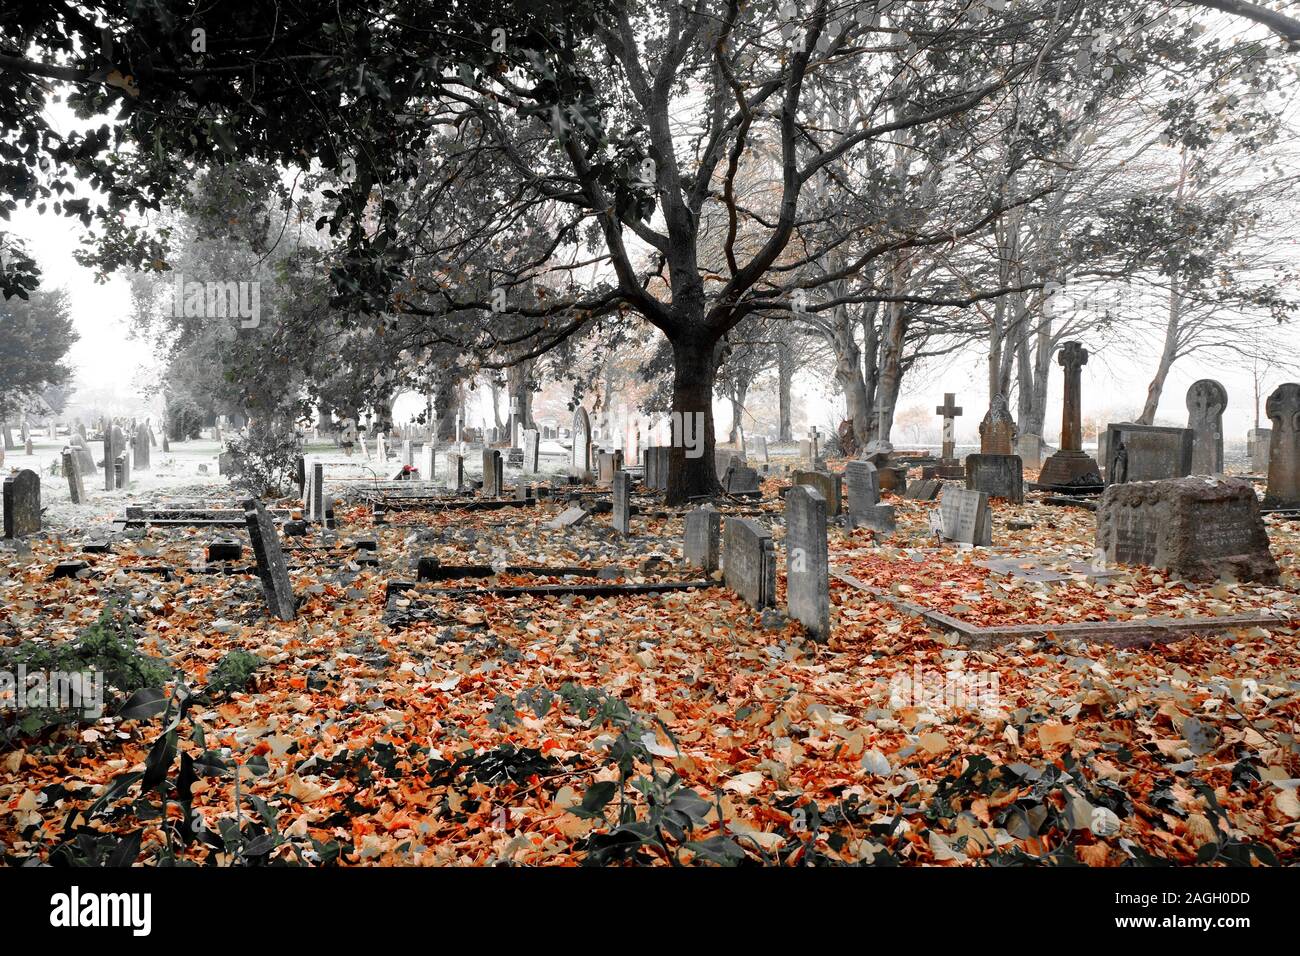 Schwarz-weiß Foto von einem Friedhof im Herbst Nebel gibt es rund hundert Gräber mit Grabsteinen, die zusammen sind in der Ferne in der Nähe ein Stockfoto